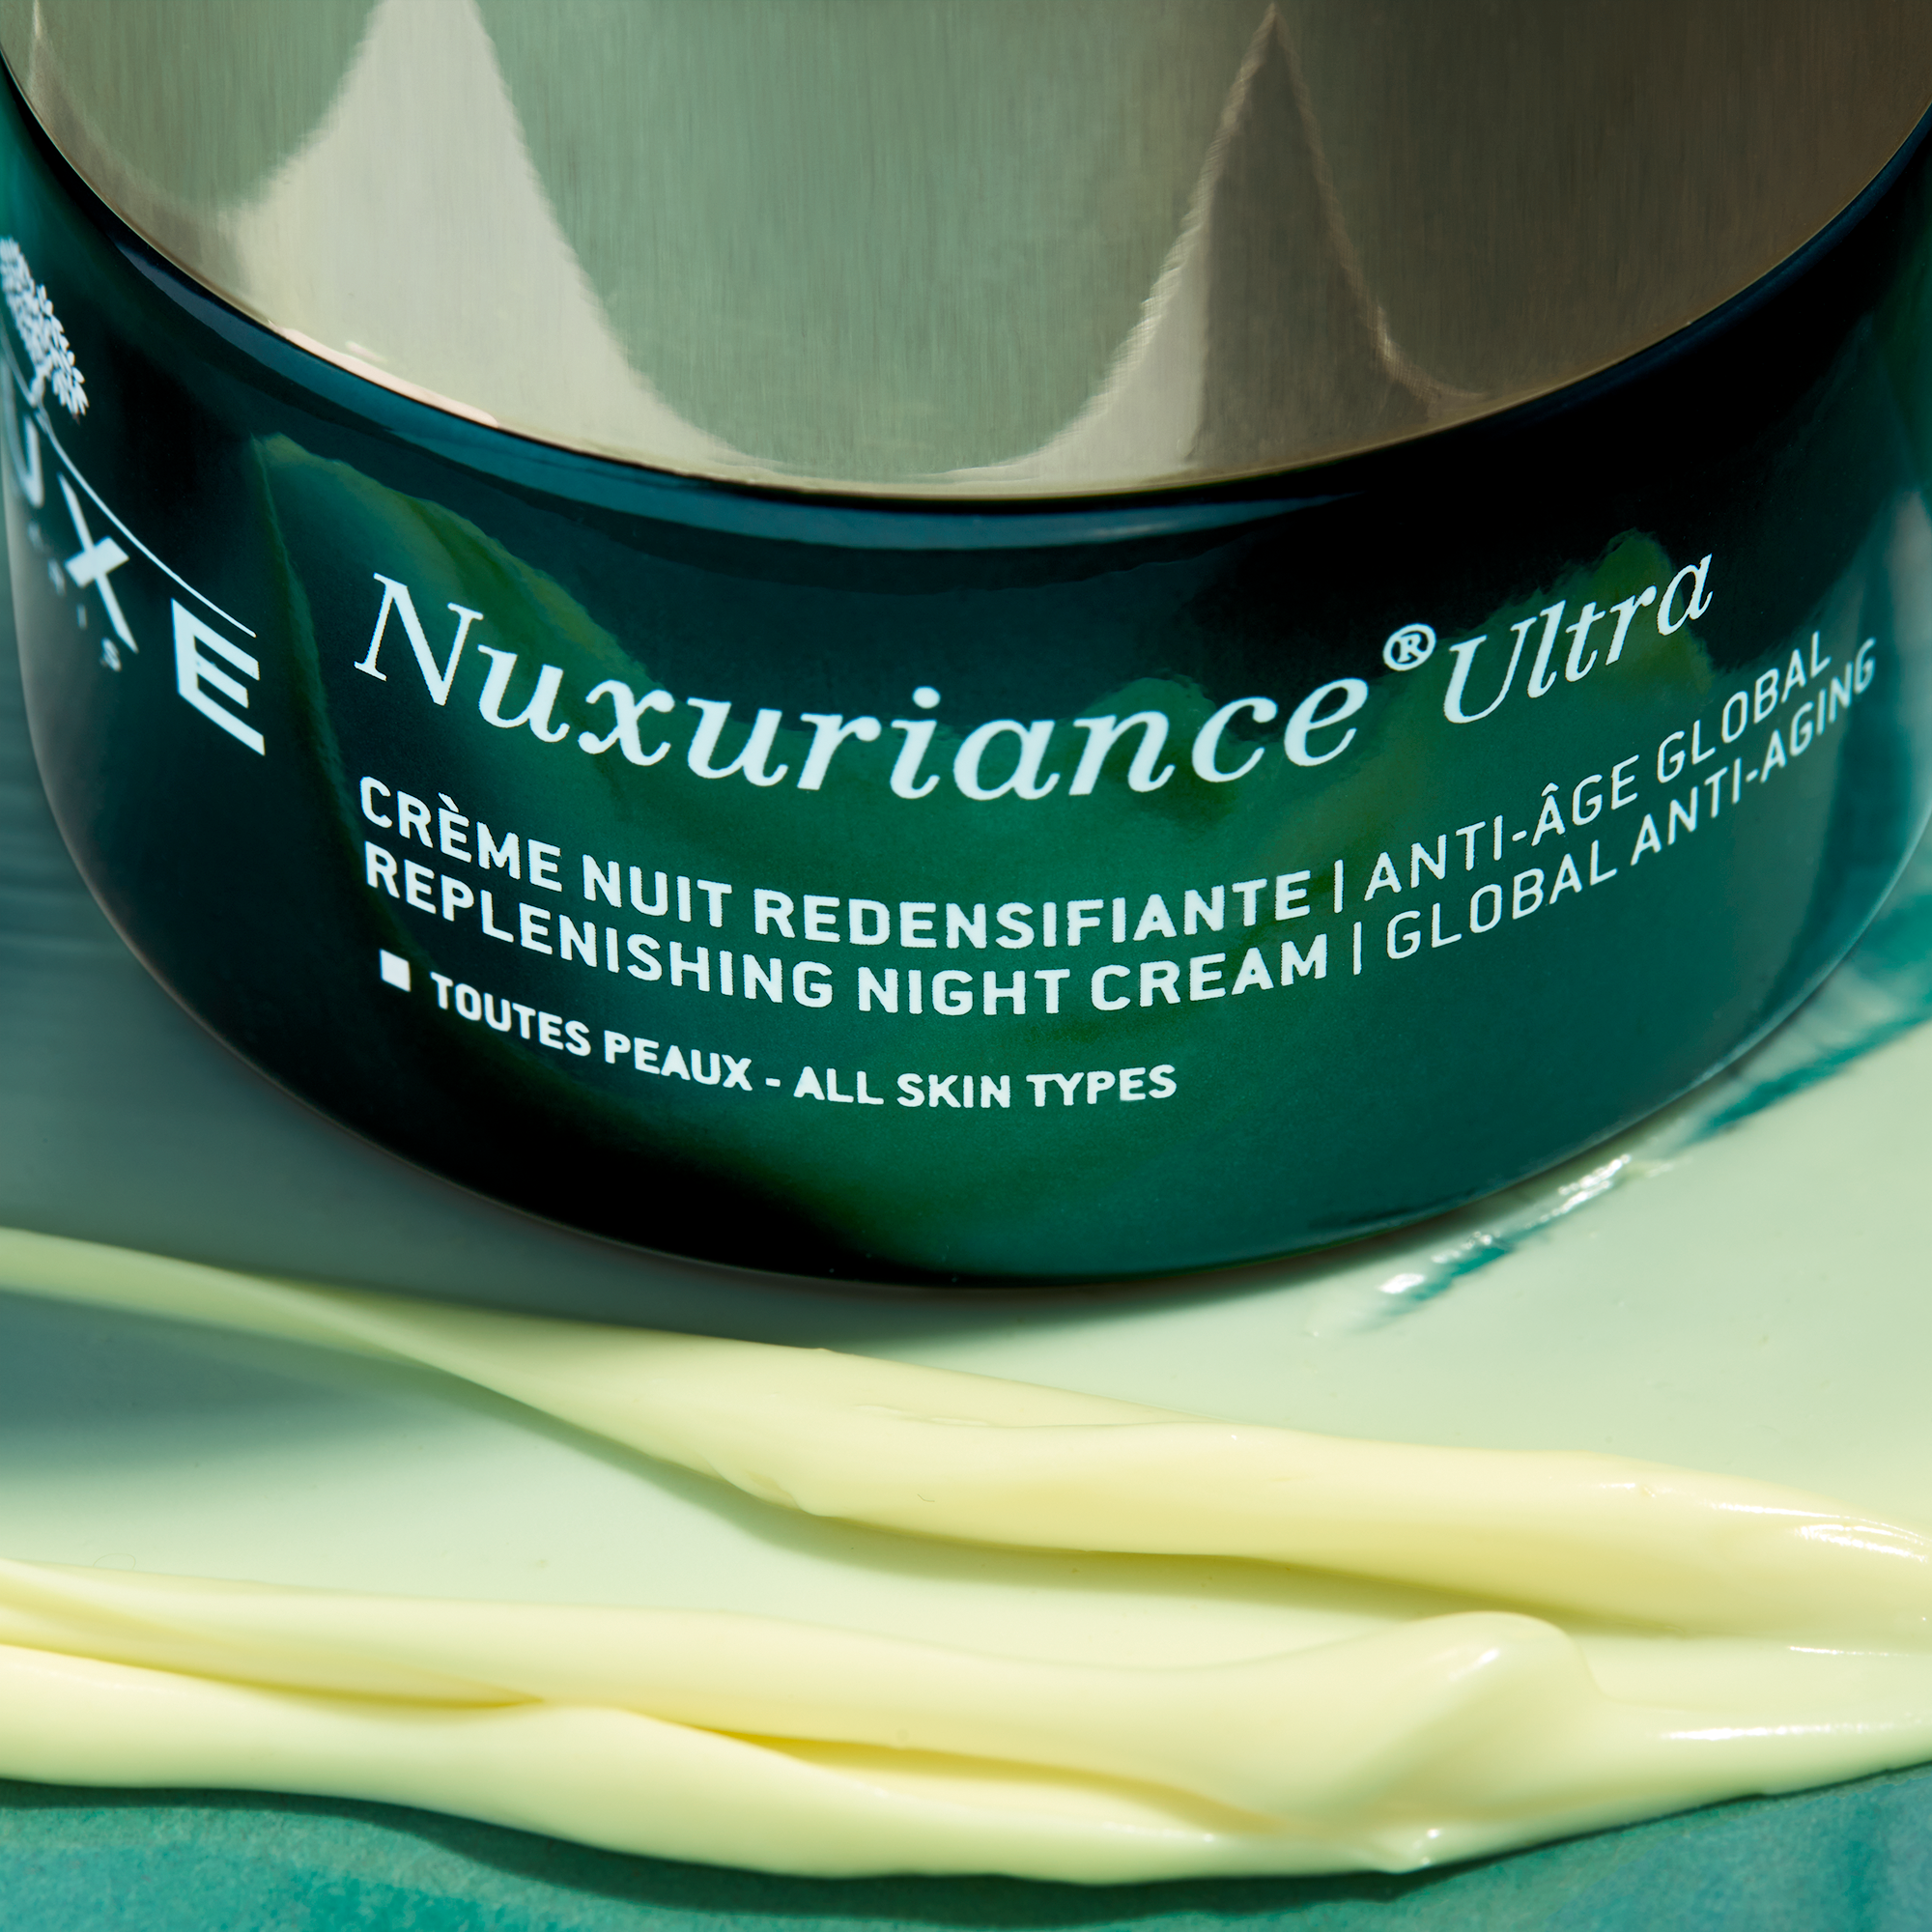 Nuxe Nuxuriance Ultra Anti-Aging Night Cream 50 ml